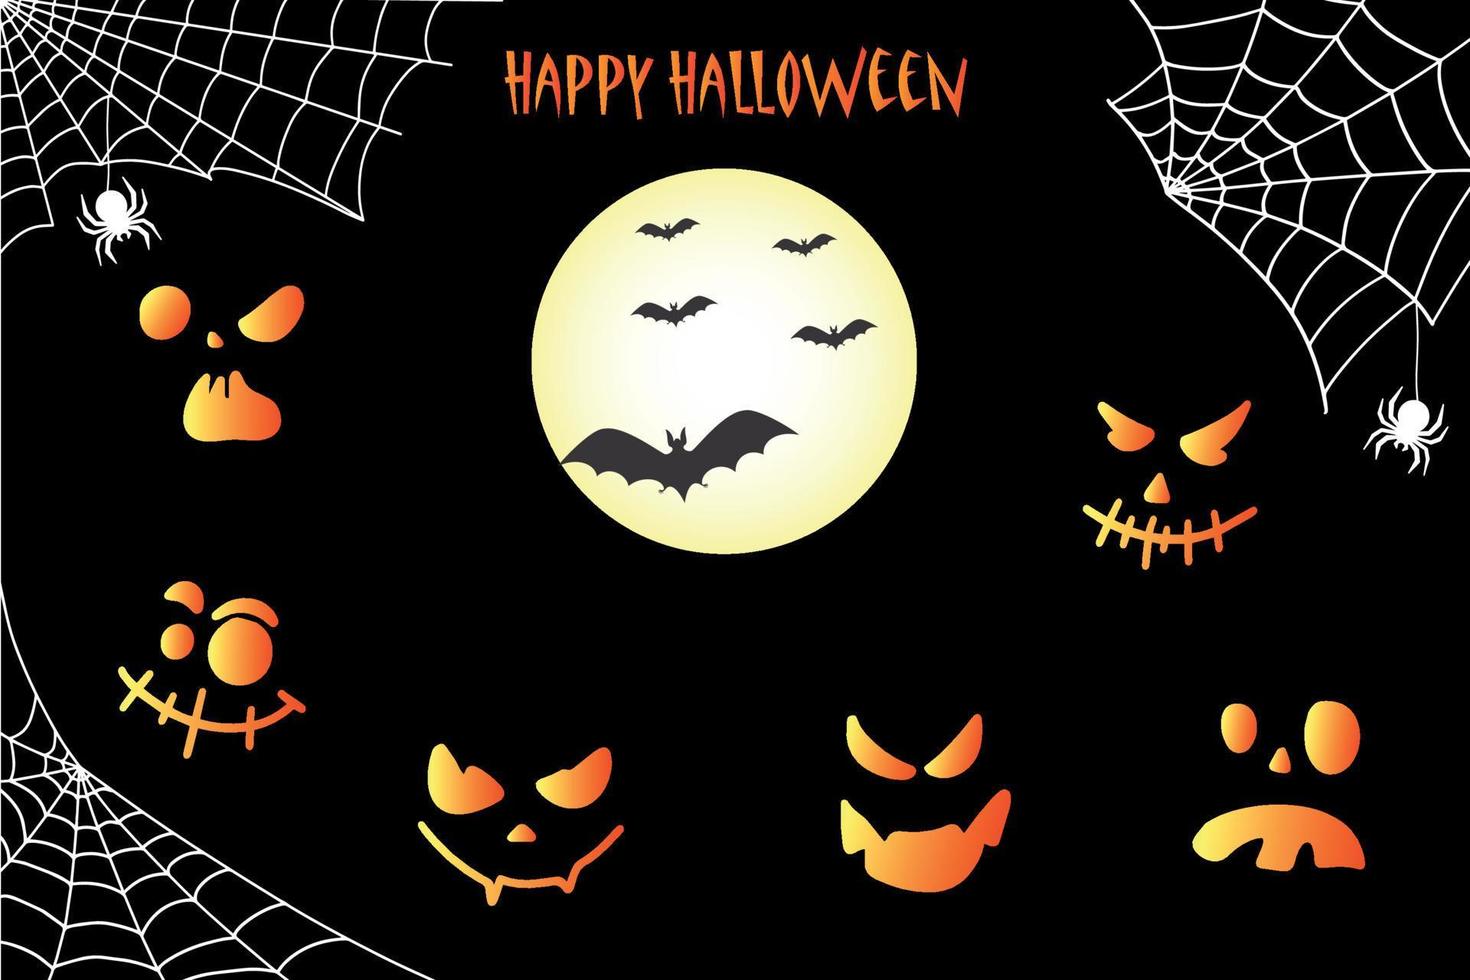 murciélago, red y calabazas. fondo de halloween con murciélagos y calabazas dibujadas a mano. vector